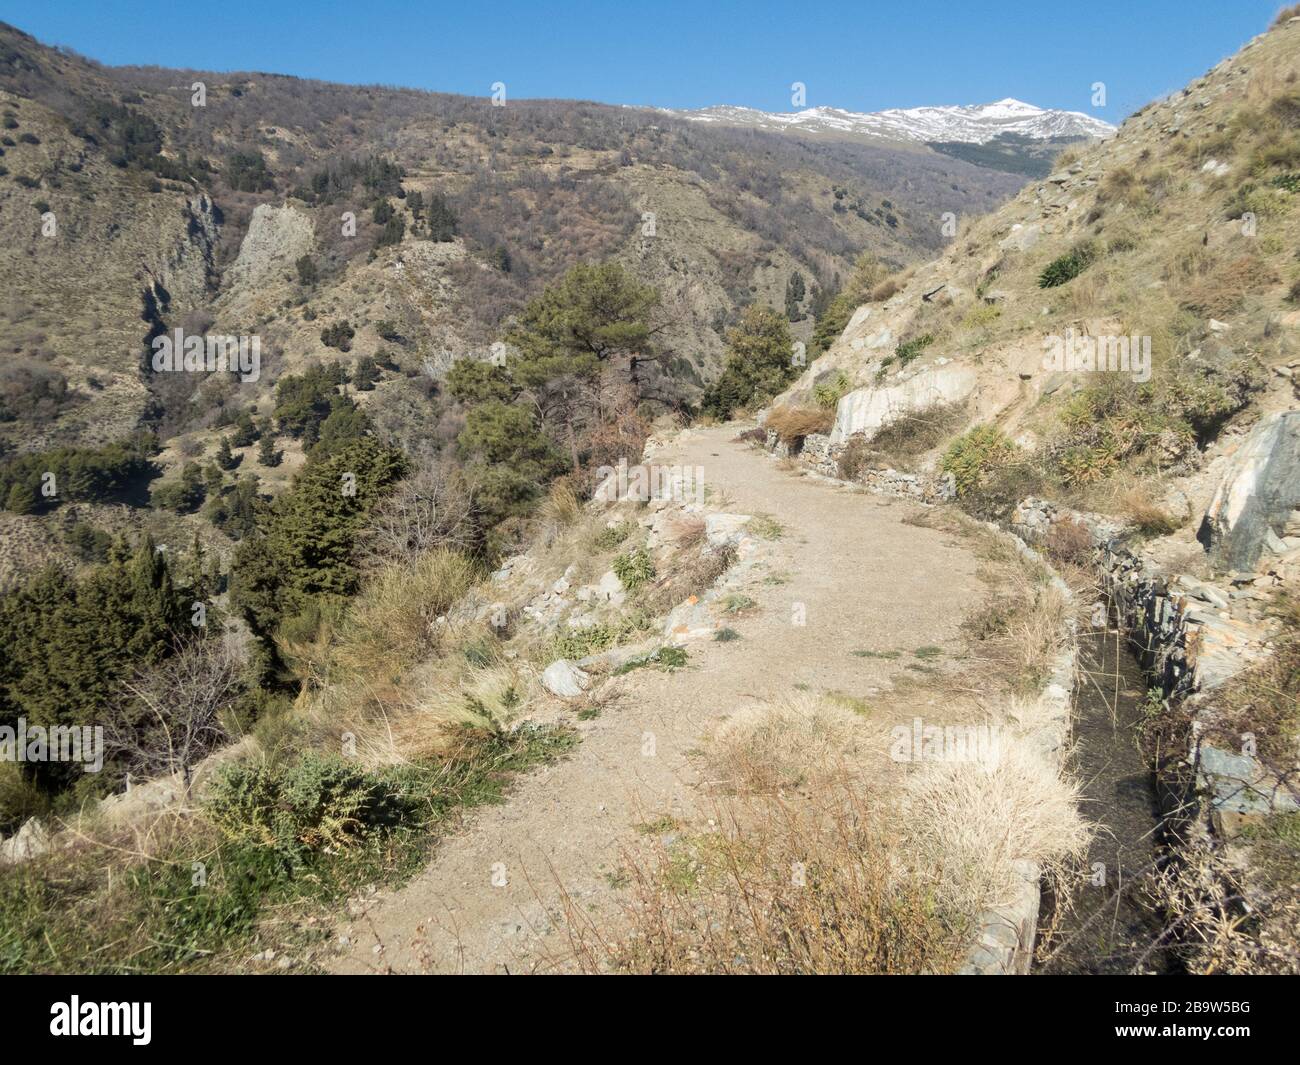 Un sentiero accanto ad un canale di irrigazione acequia, Sierra Nevada montagne vicino Soportujar, valle Alpujarra, Andalusia, Spagna Foto Stock